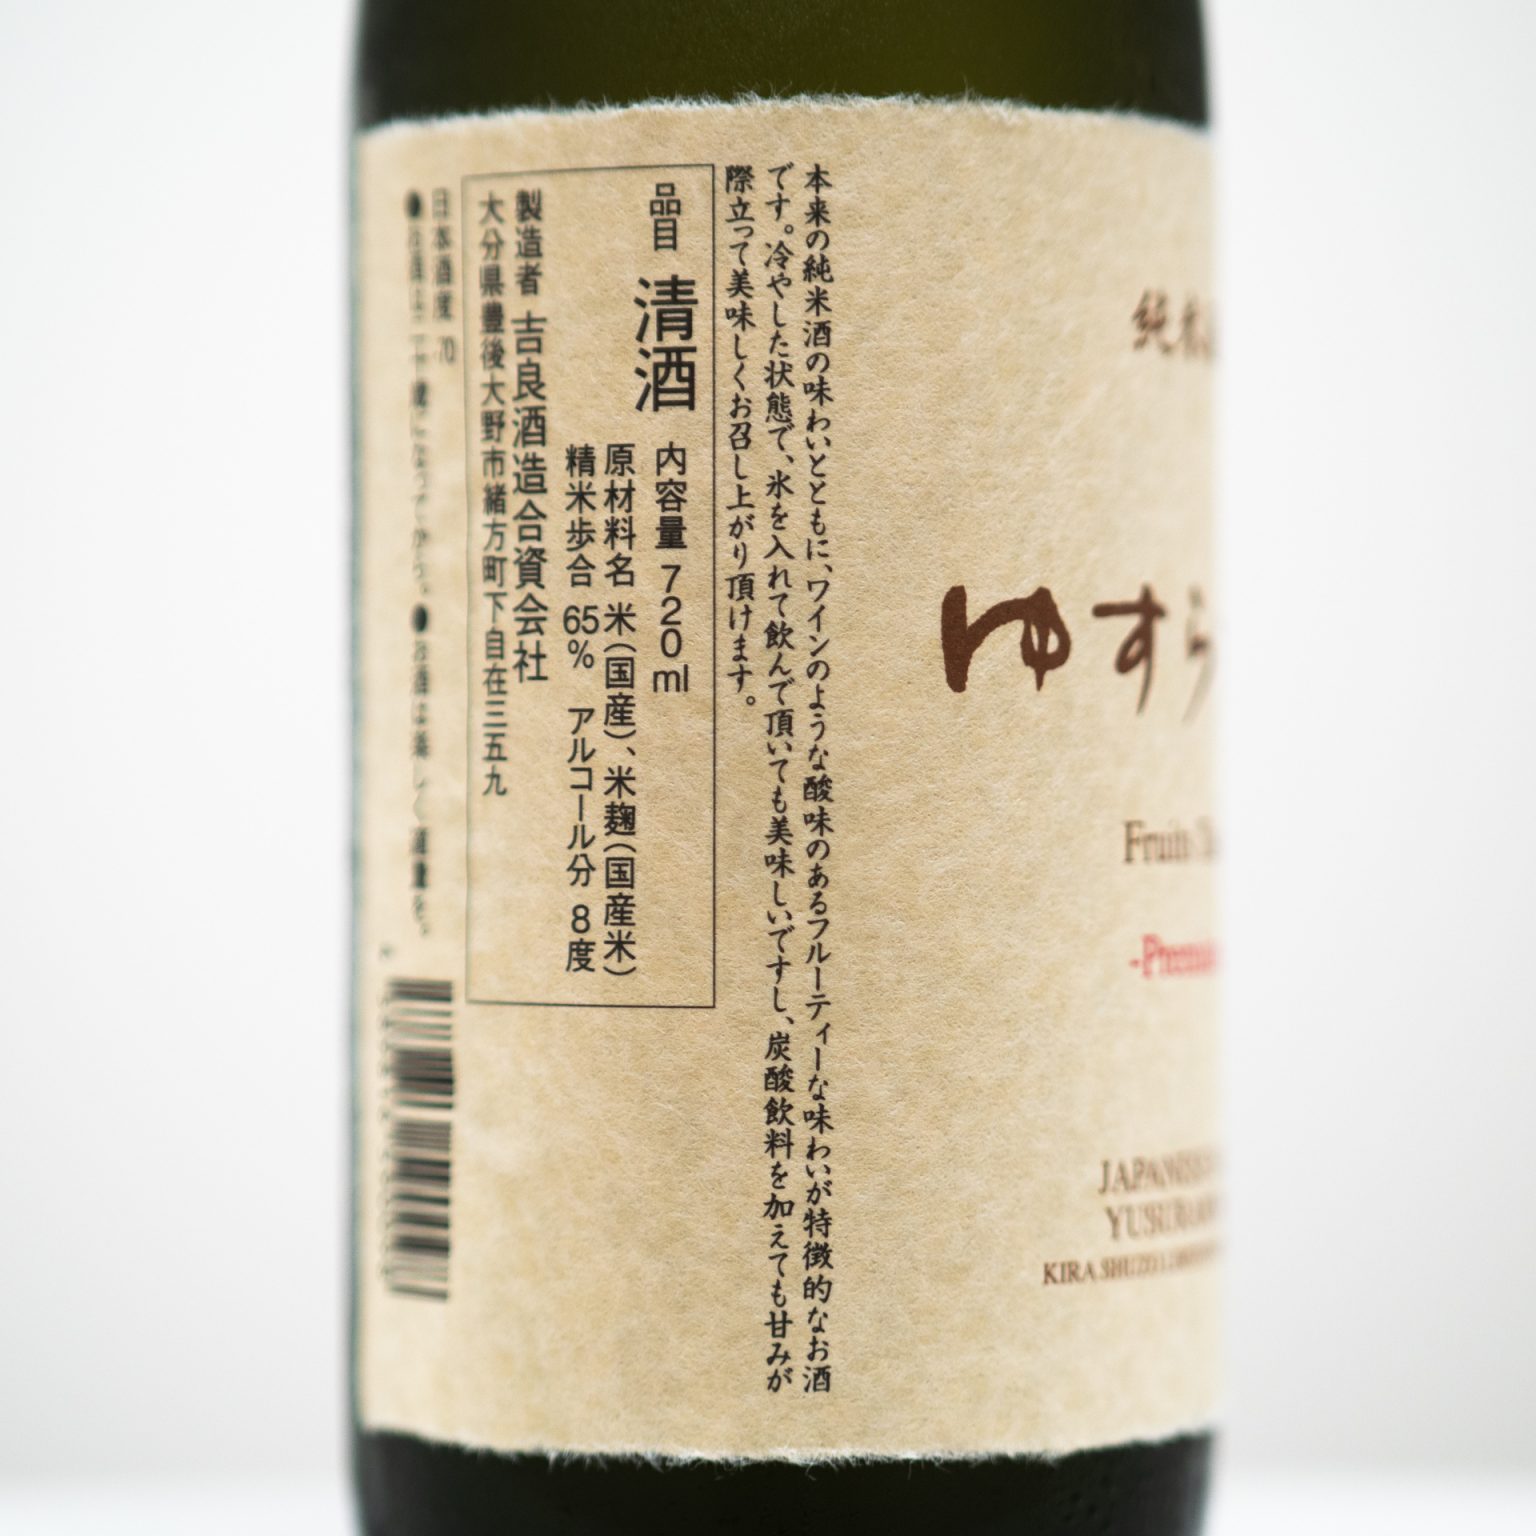 「ゆすらもも 純米酒」720ml 1486円（税込・ひいな購入時価格）／吉良酒造合資会社